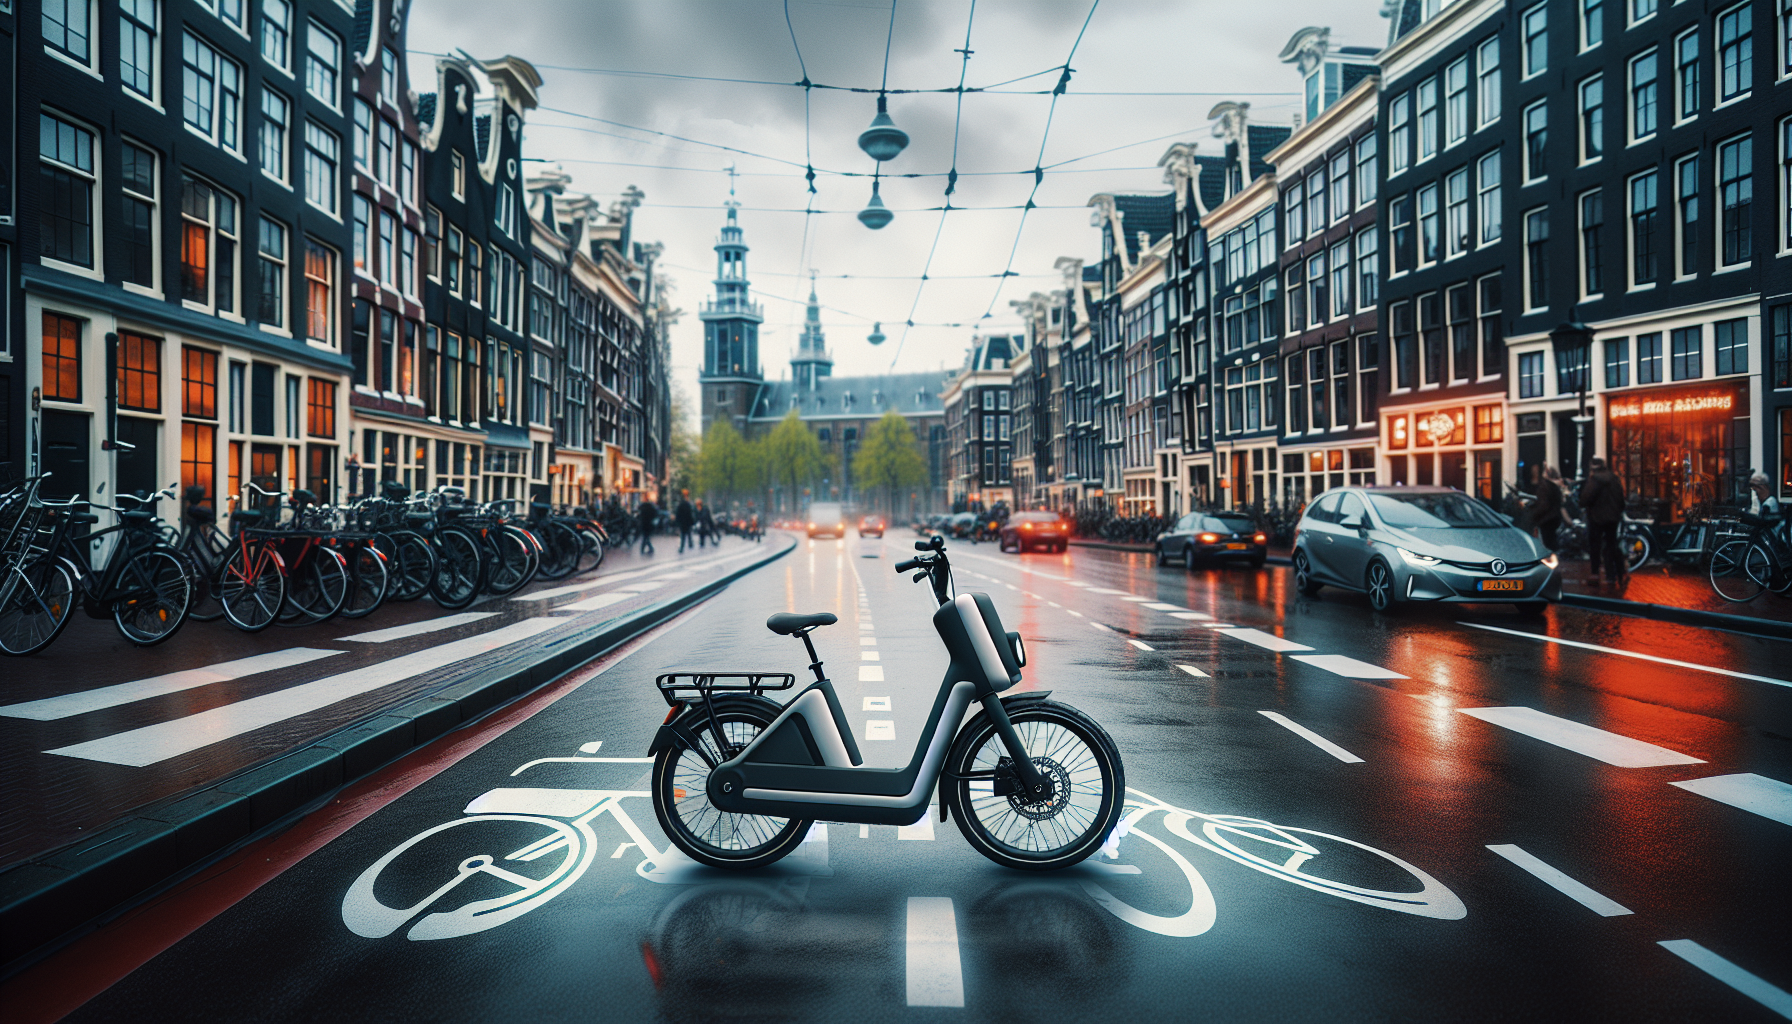 Meer informatie over "Amsterdam wil e-bikes op afstand afremmen in bepaalde gebieden"